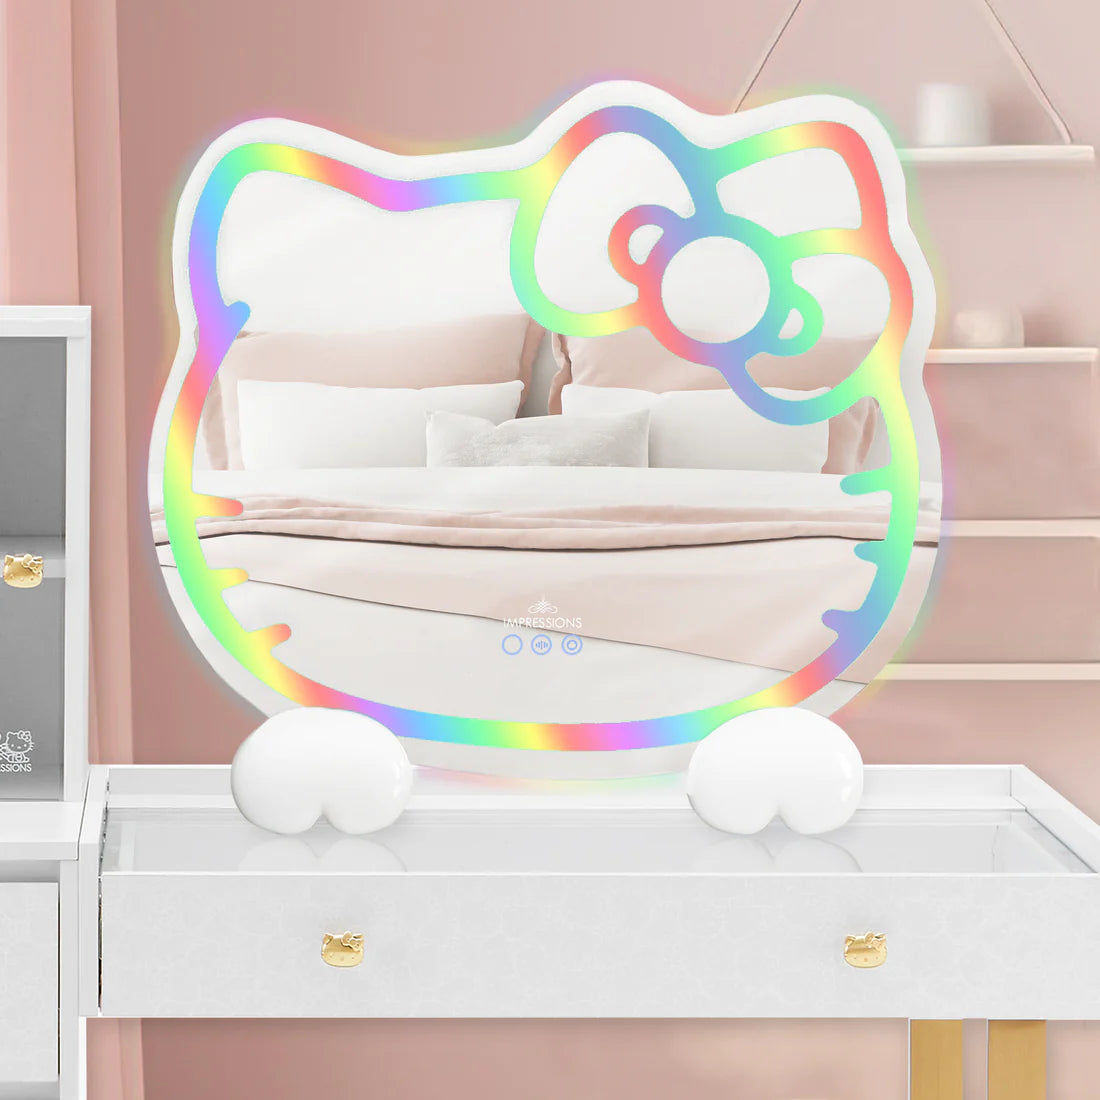 Espejo de pared RGB Hello Kitty 2.0 con parlantes Bluetooth y base especial